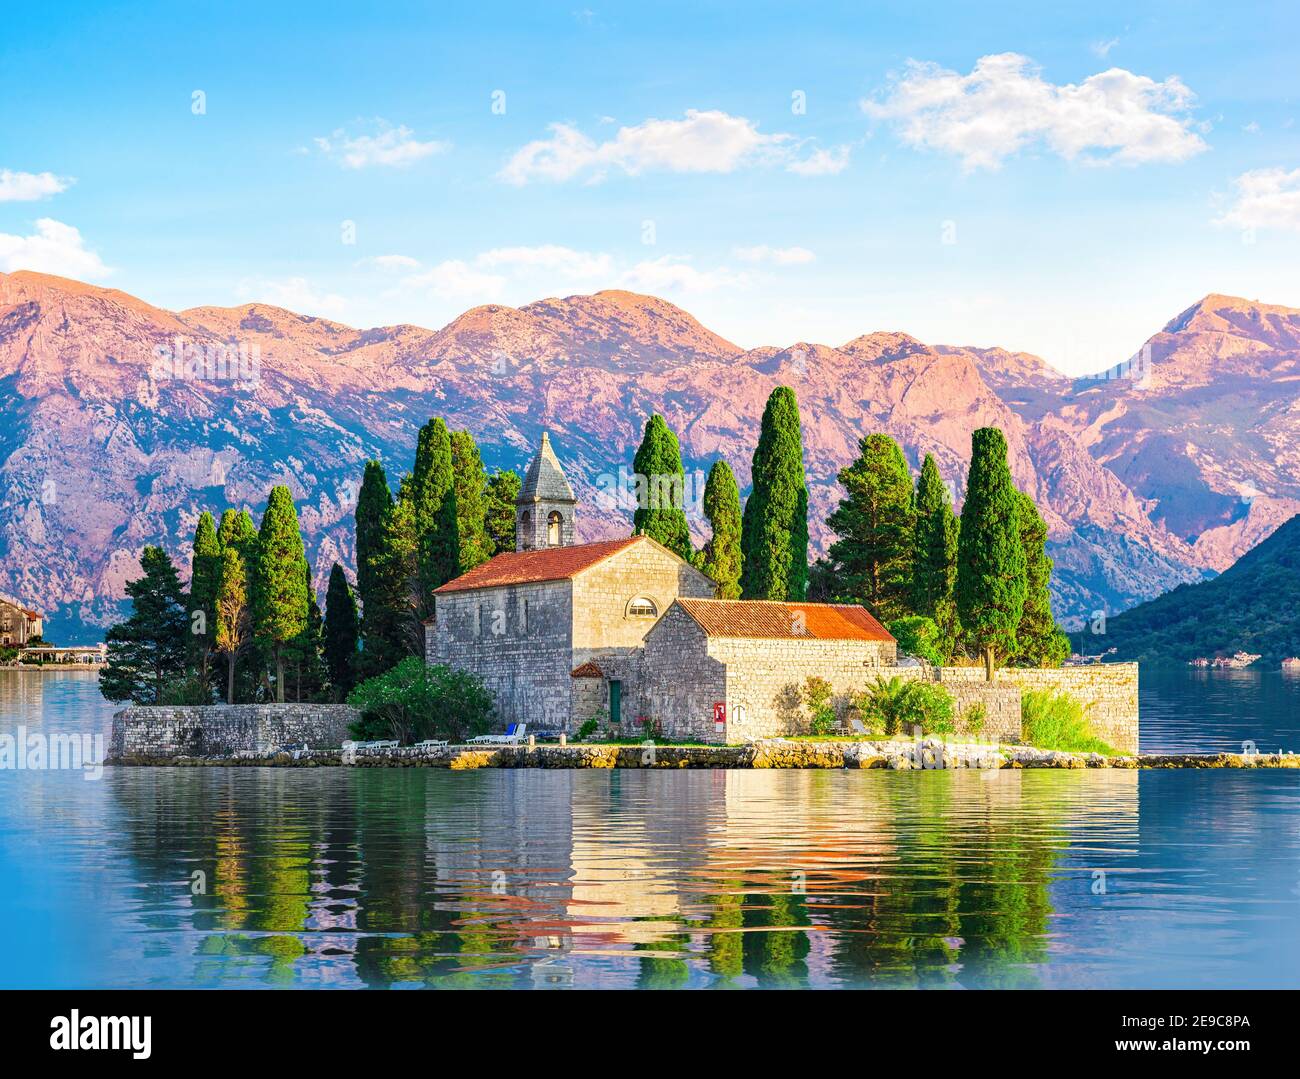 Insel Saint George in den Bergen von Perast, Montenegro. Stockfoto